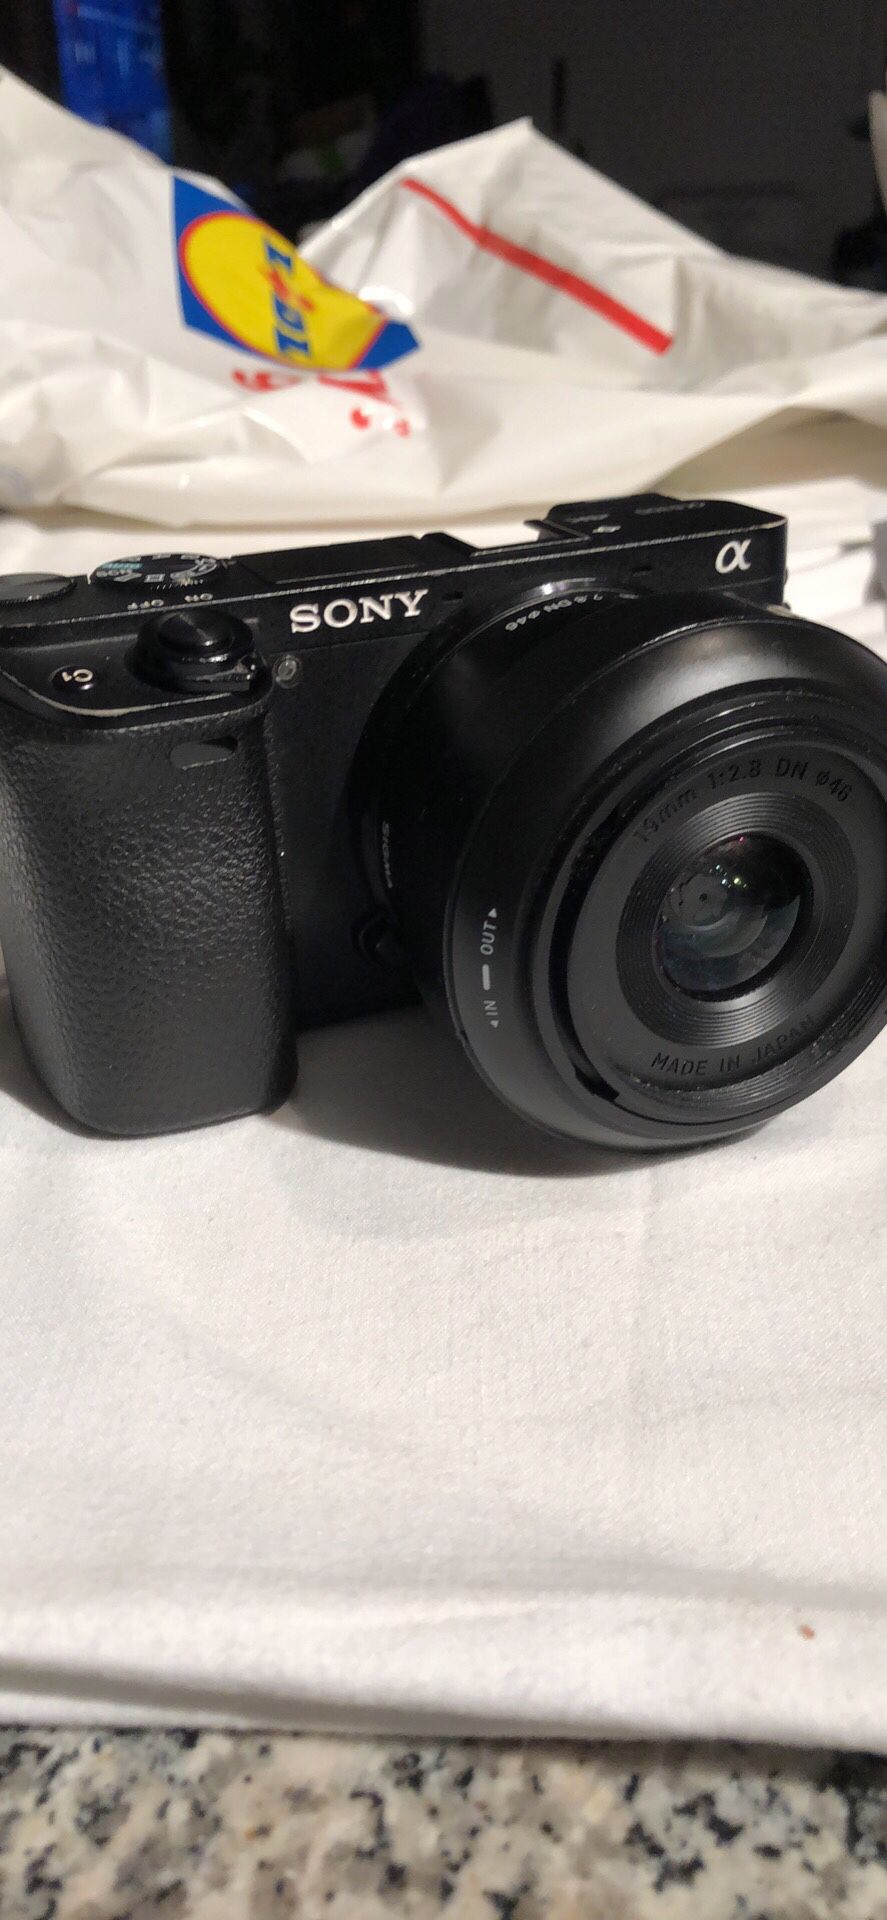 Sony A6300 4K camera